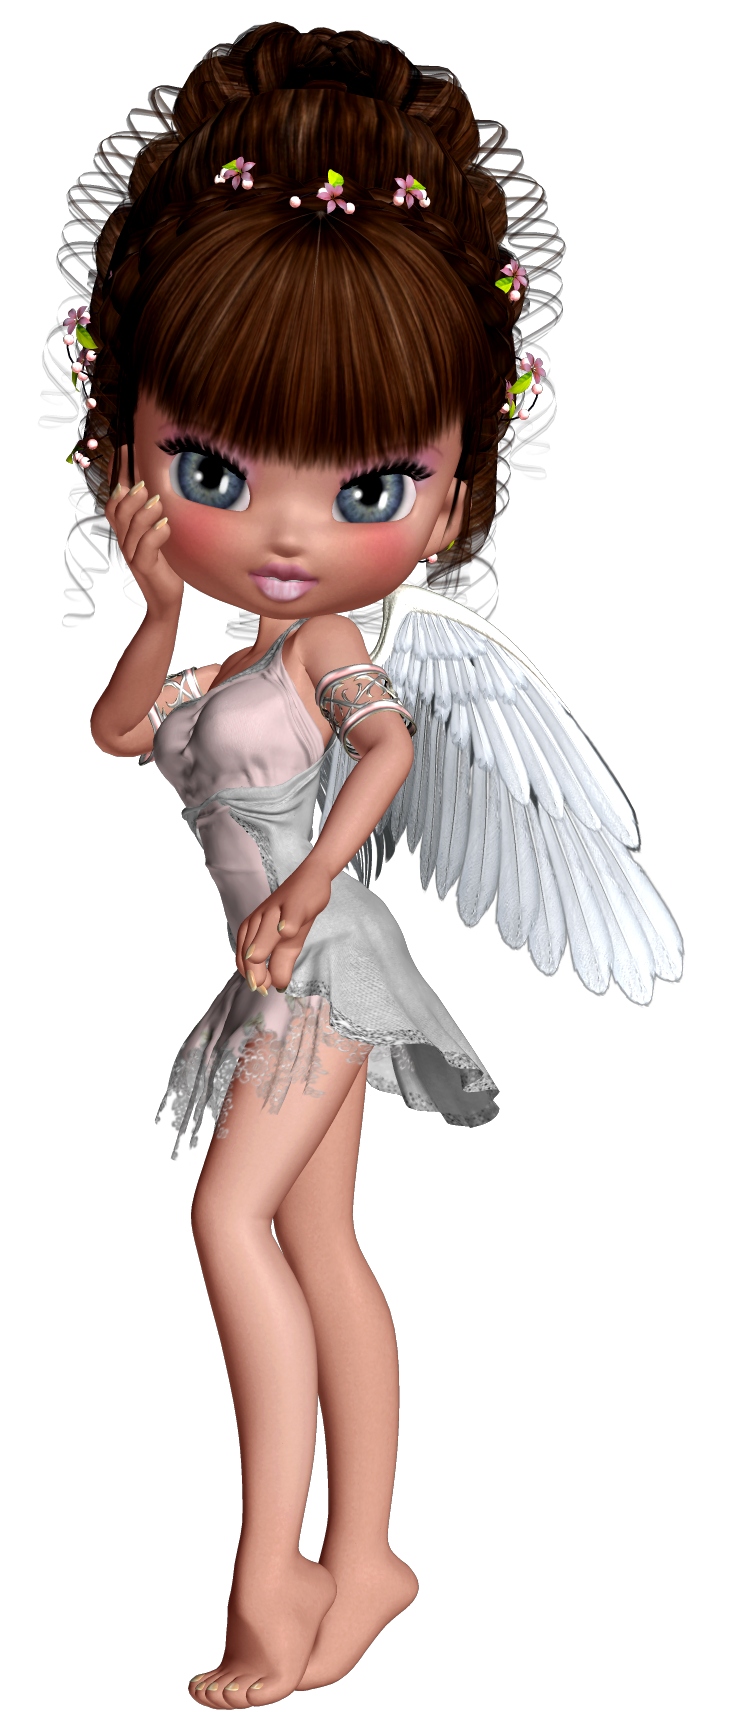 Cute d little my. Design clipart angel